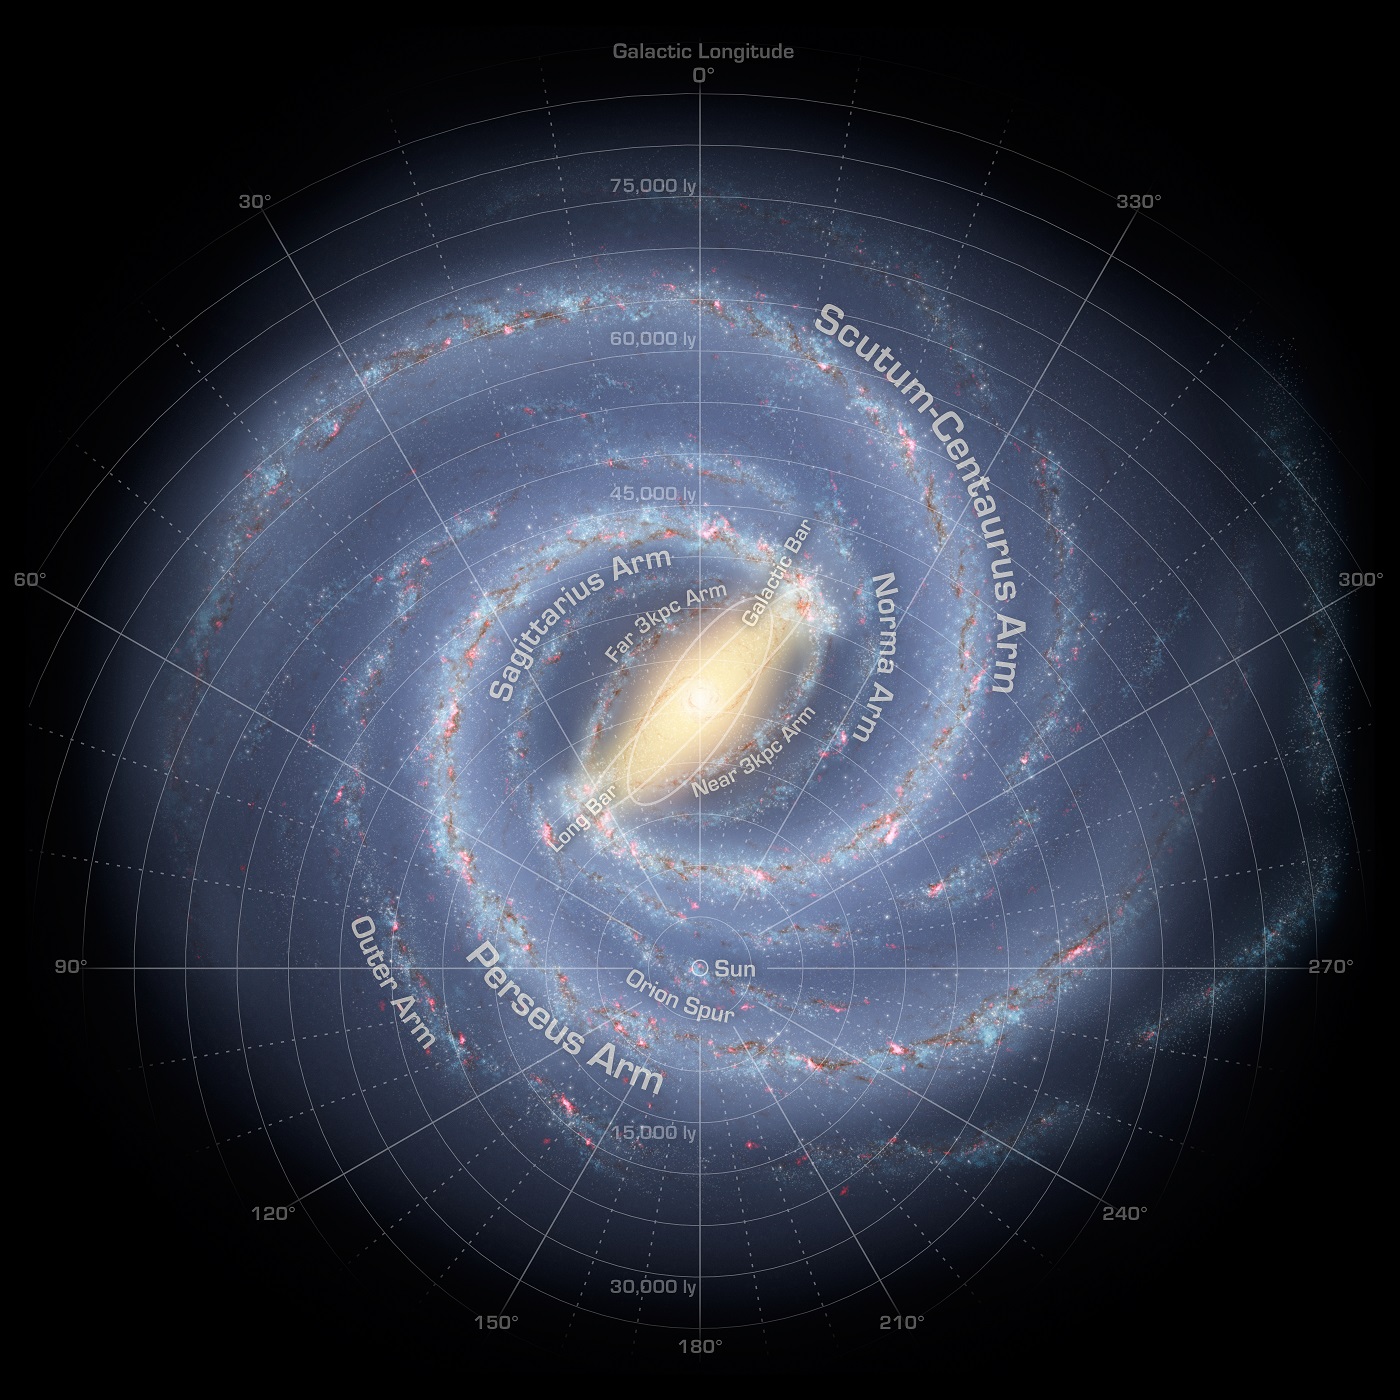 Struktura Mléčné dráhy a naše pozice v ní. Kredit: NASA (obrázek v plném rozlišení zde) https://solarsystem.nasa.gov/system/downloadable_items/151_ssc2008-10b1.tif